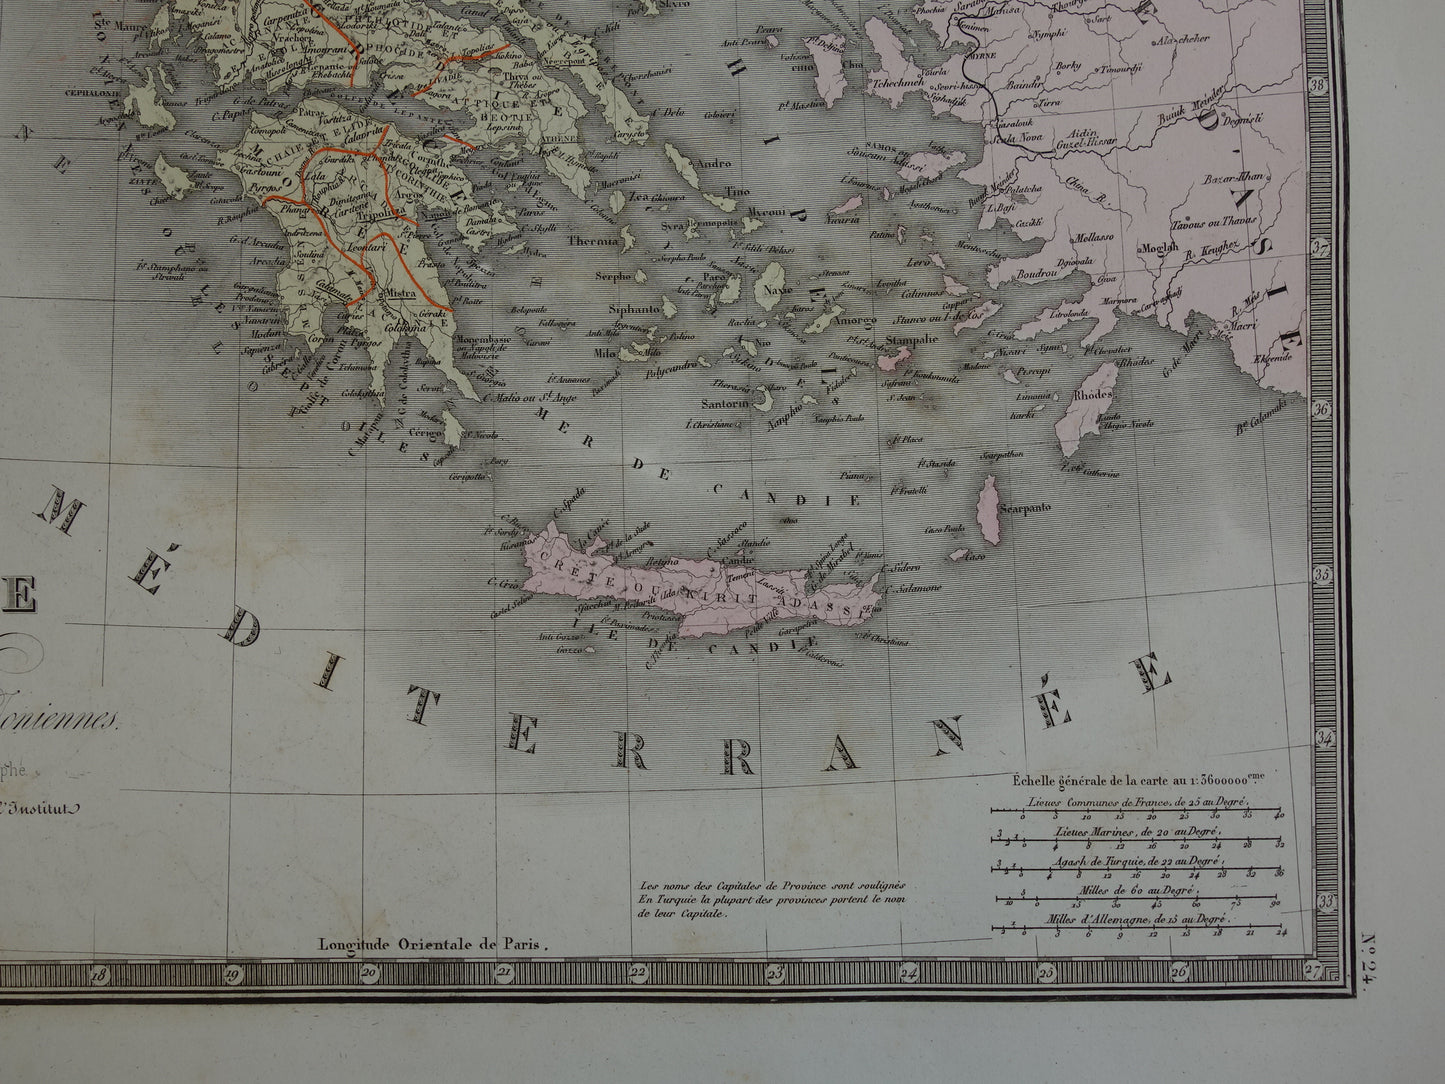 Ottomaanse Rijk antieke kaart van Europees Turkije met Balkan Servië Griekenland 145+ jaar oude landkaart vintage historische kaarten